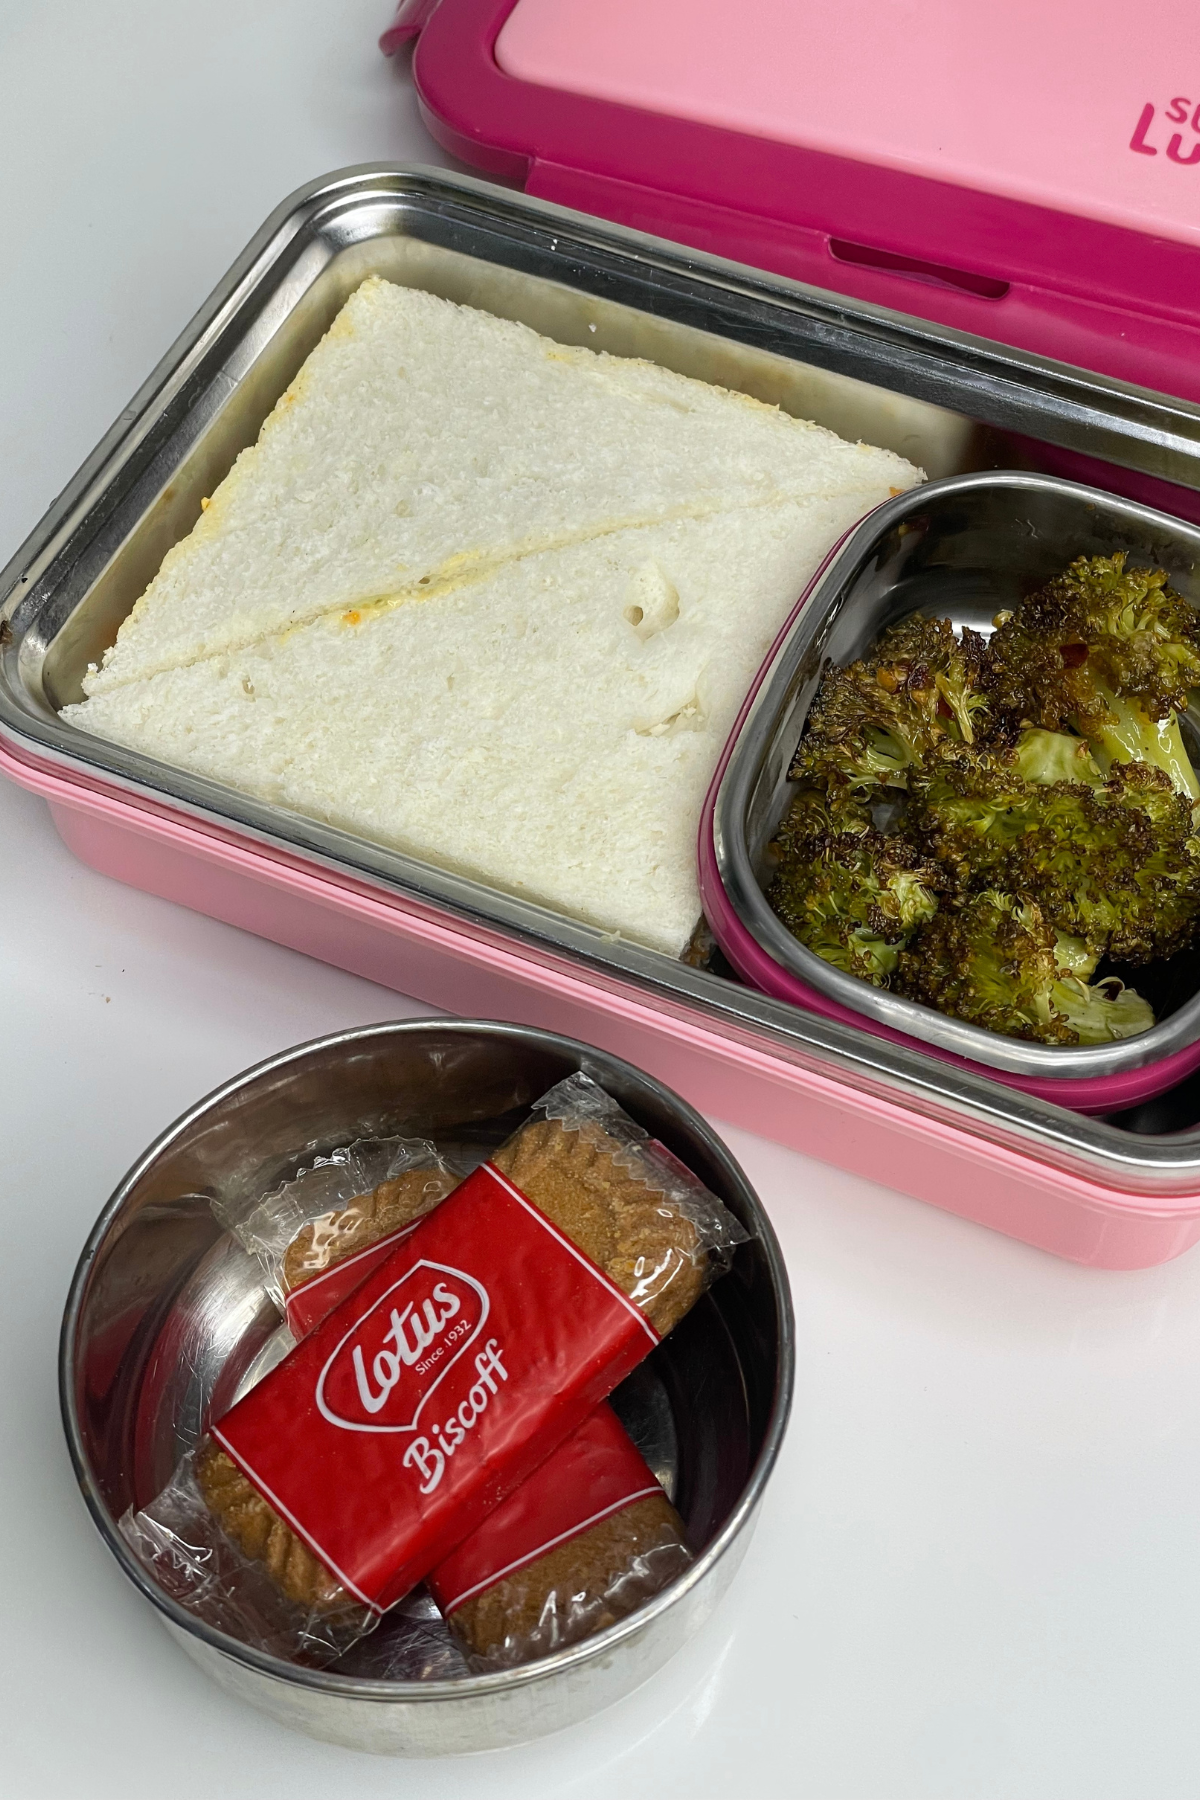 68 Healthy Preschool & Kindergarten School Lunch Ideas